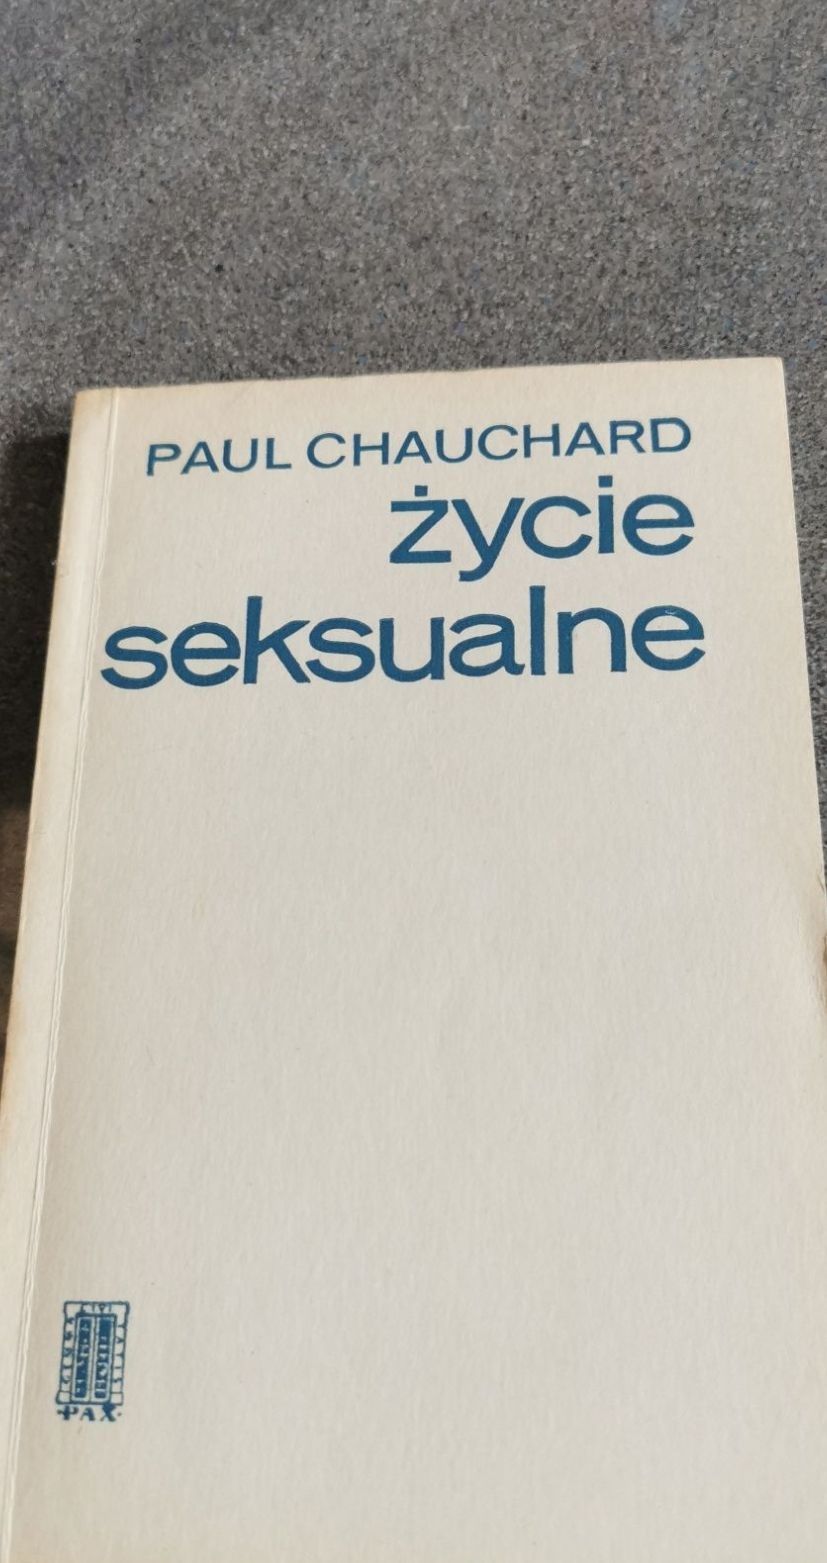 Paul Chauchard 
Życie seksualne